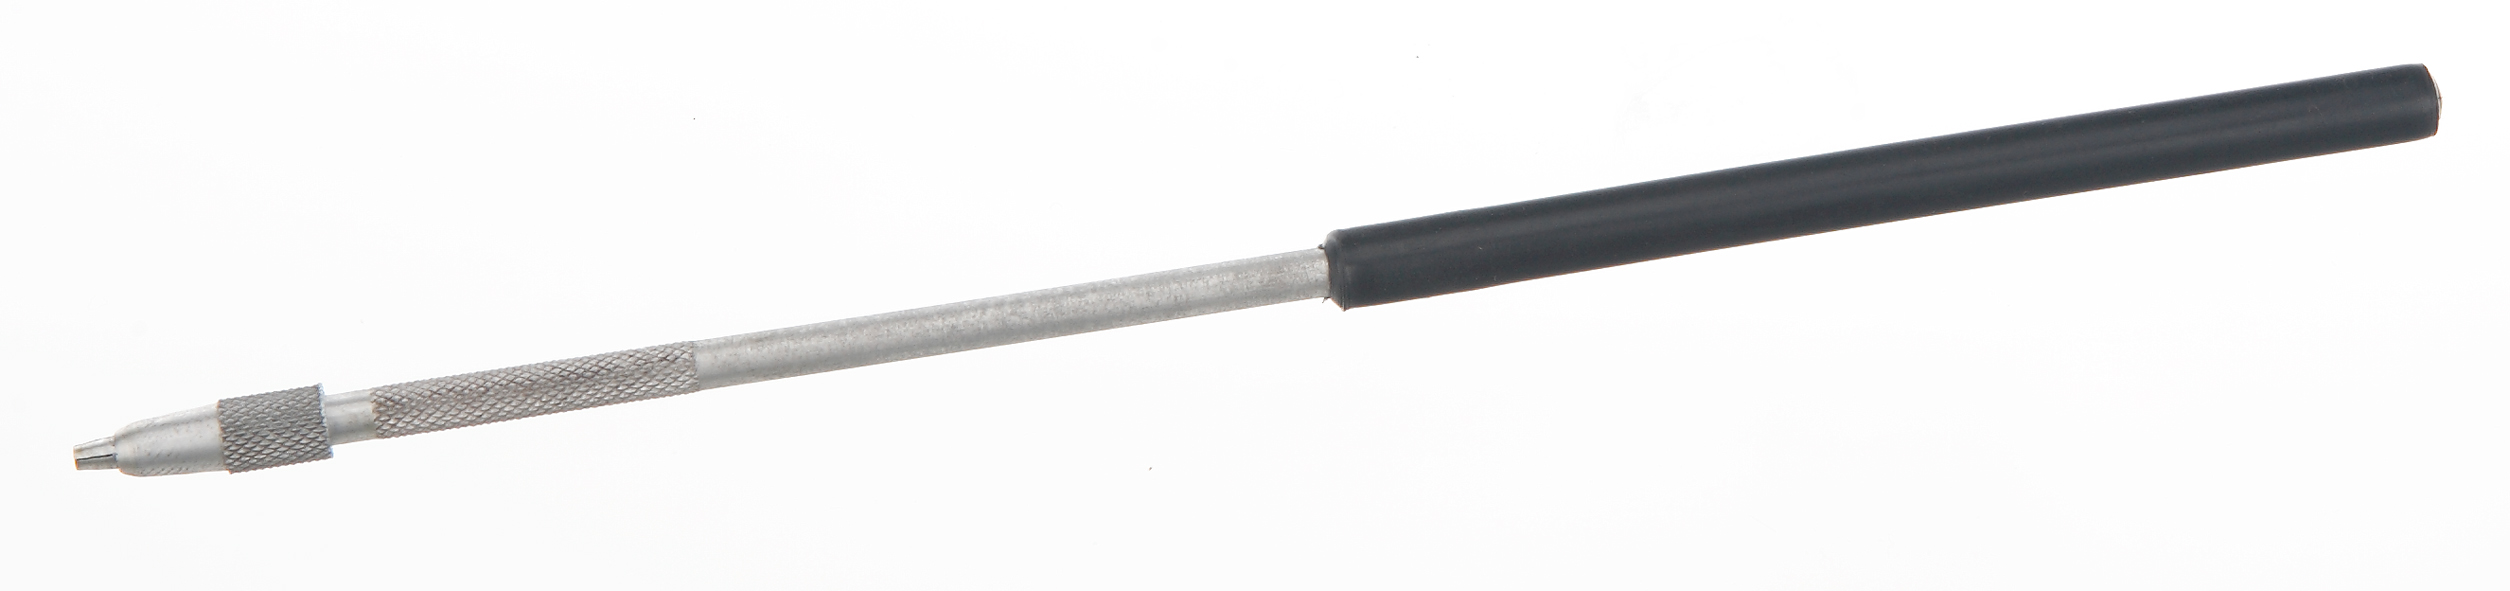 Nadelhalter Typ KOLLE, Alu/Plastikgriff, L=230mm